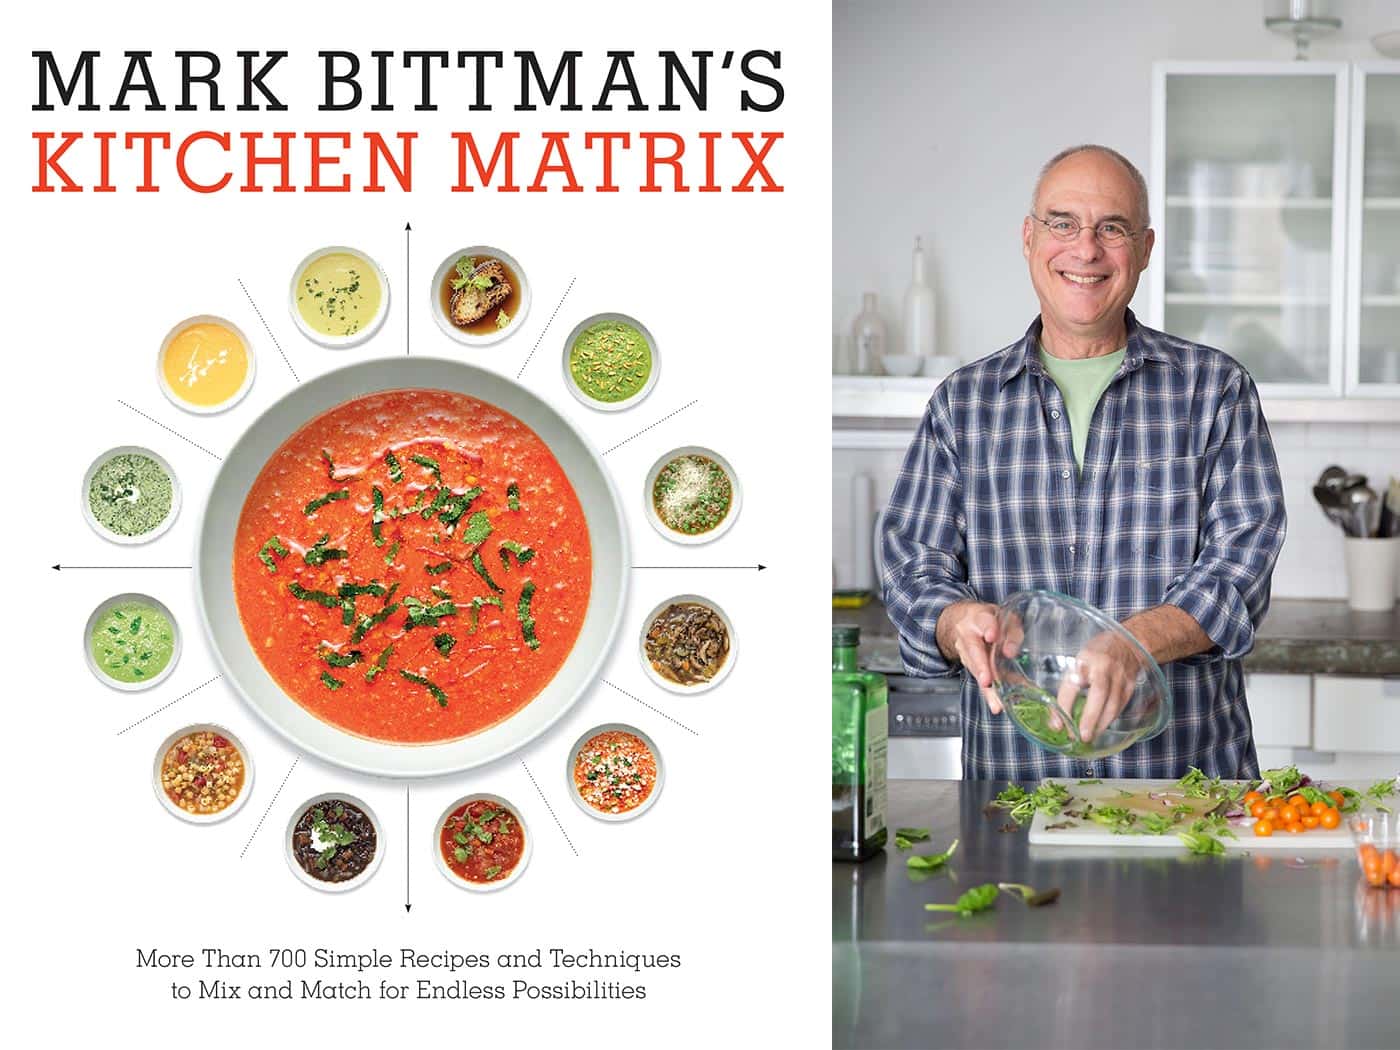 Mark Bittman's Kitchen Matrix Book Review